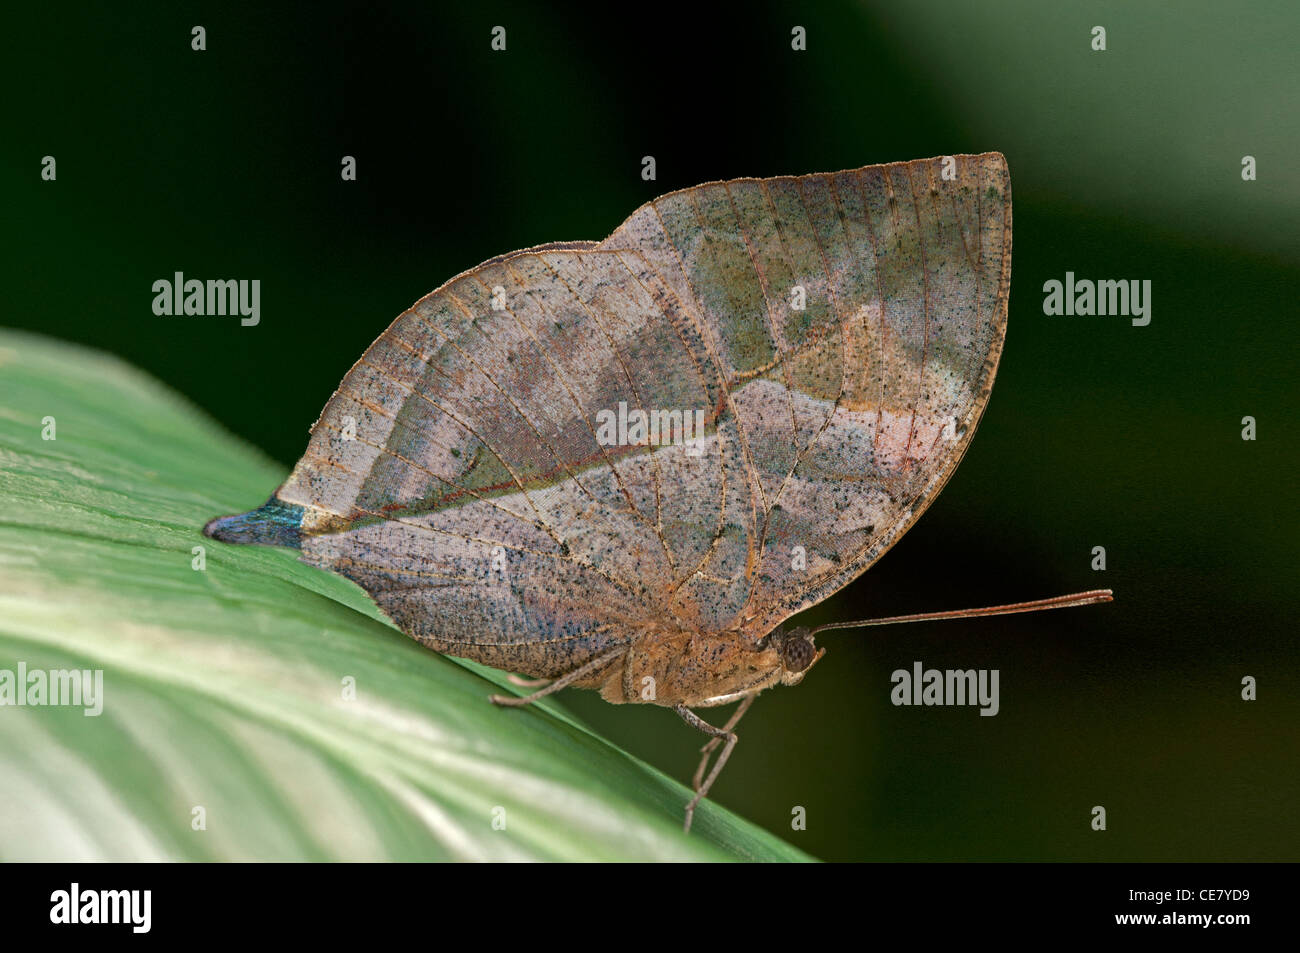 Kallima paralekta Leafwing, indiens, la couleur et la forme des ailes fermées ressemble une feuille morte, Phuket, Thailand Banque D'Images